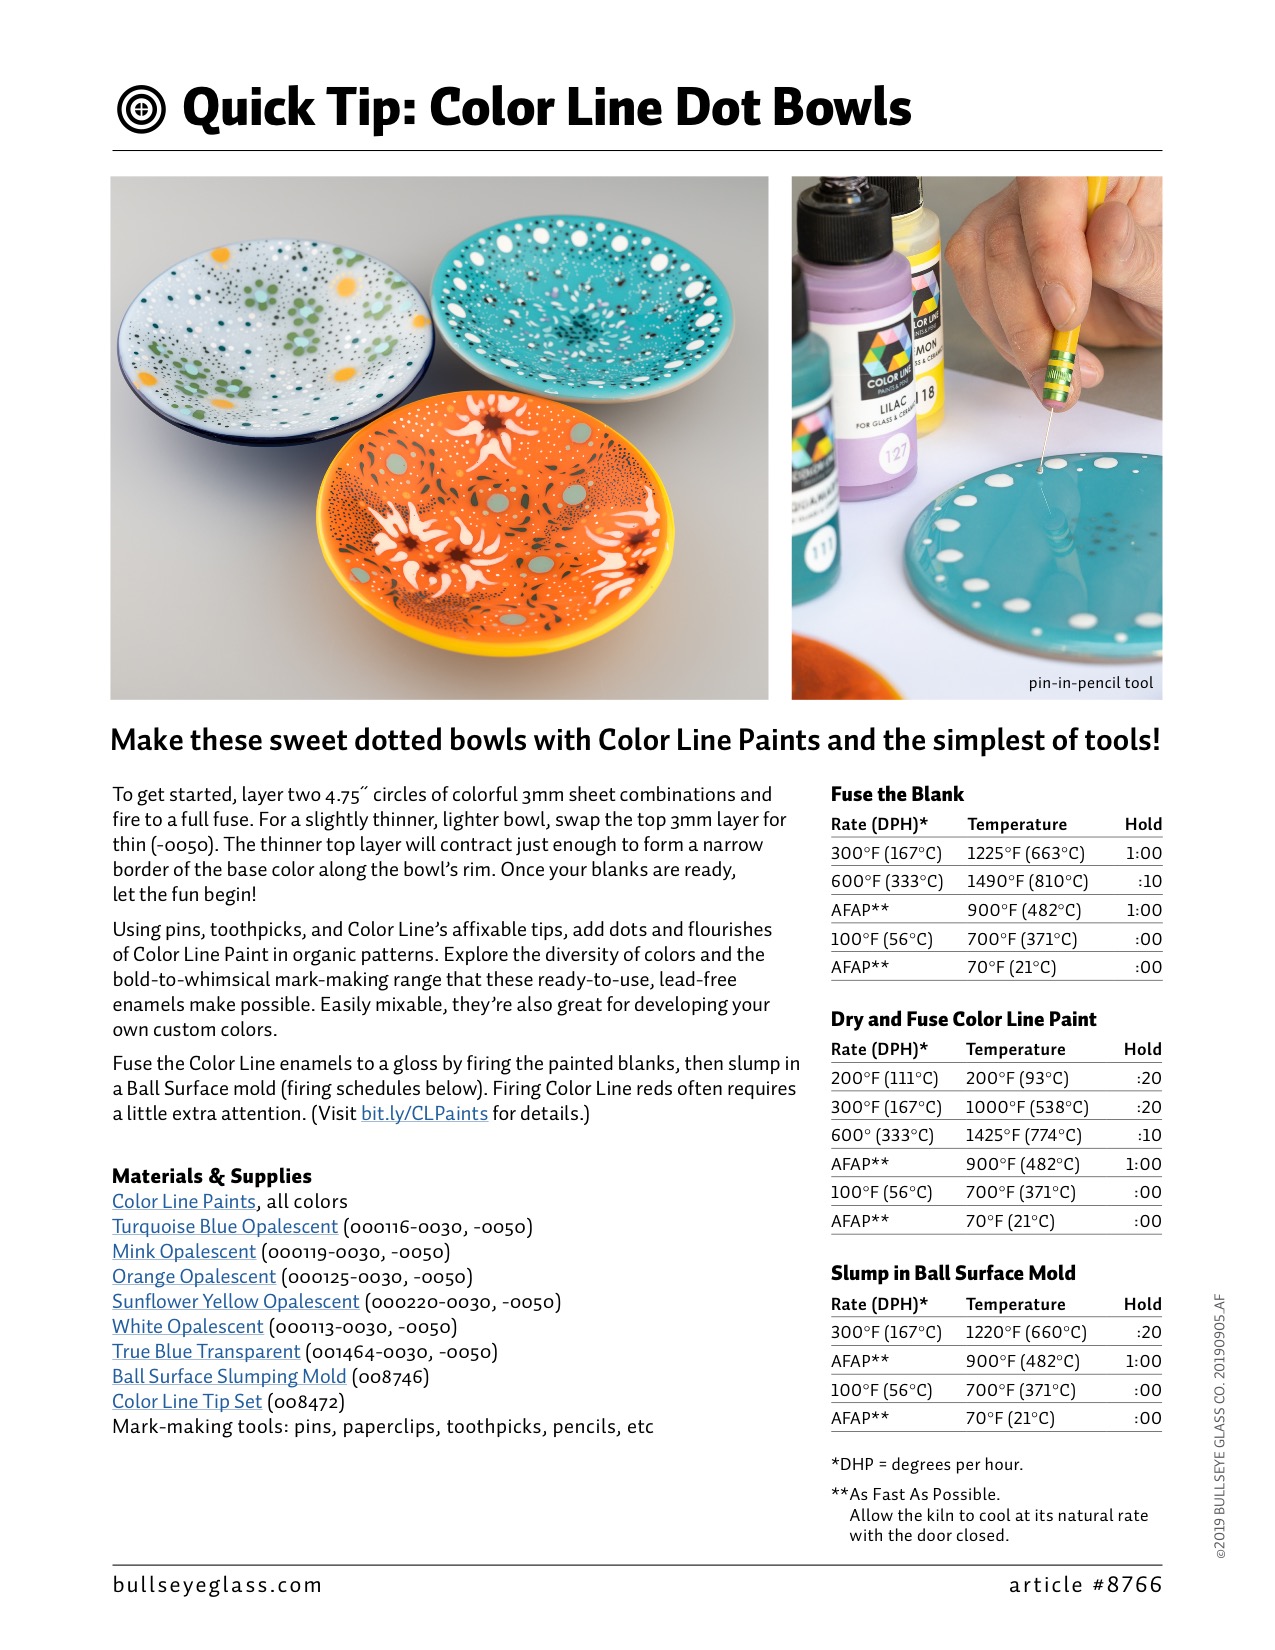 Color Line dot bowls